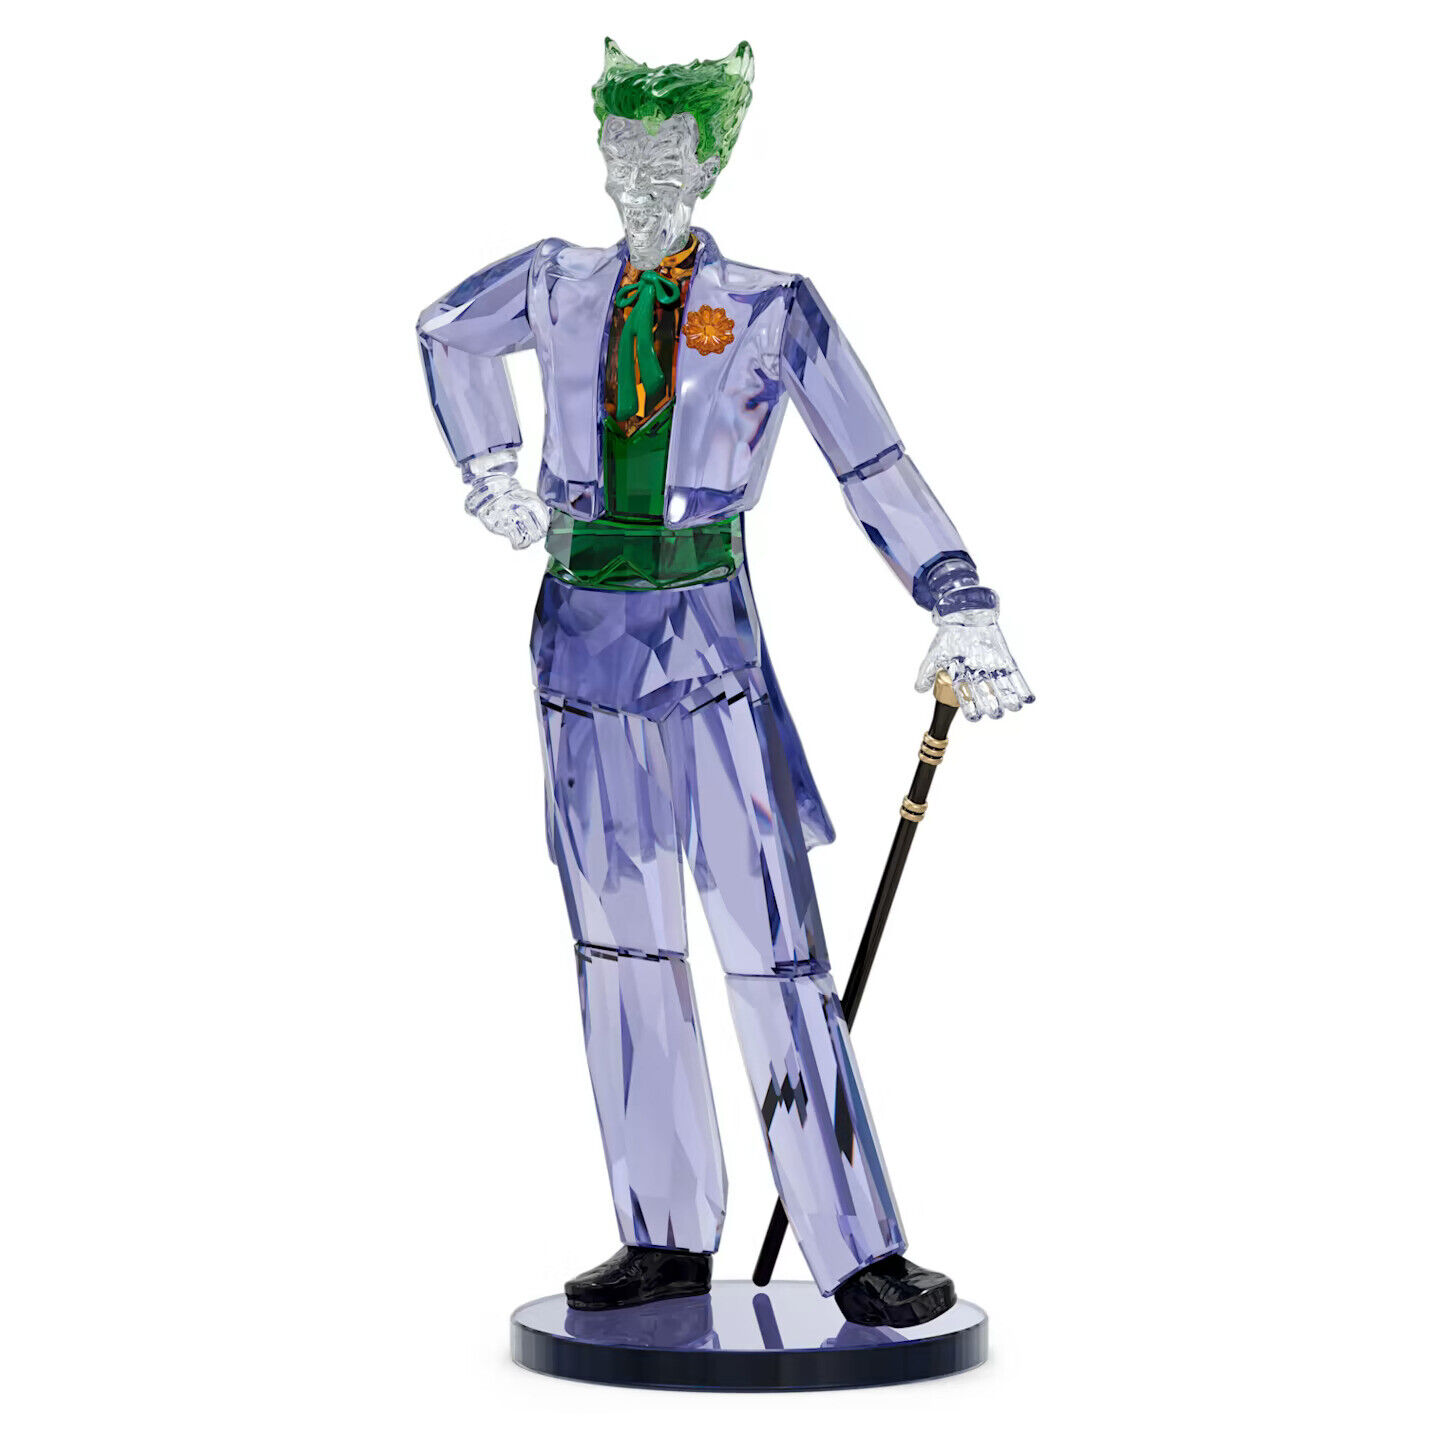 Swarovski Crystal DC Comics The Joker Figurine Decoration, Purple, 5630604